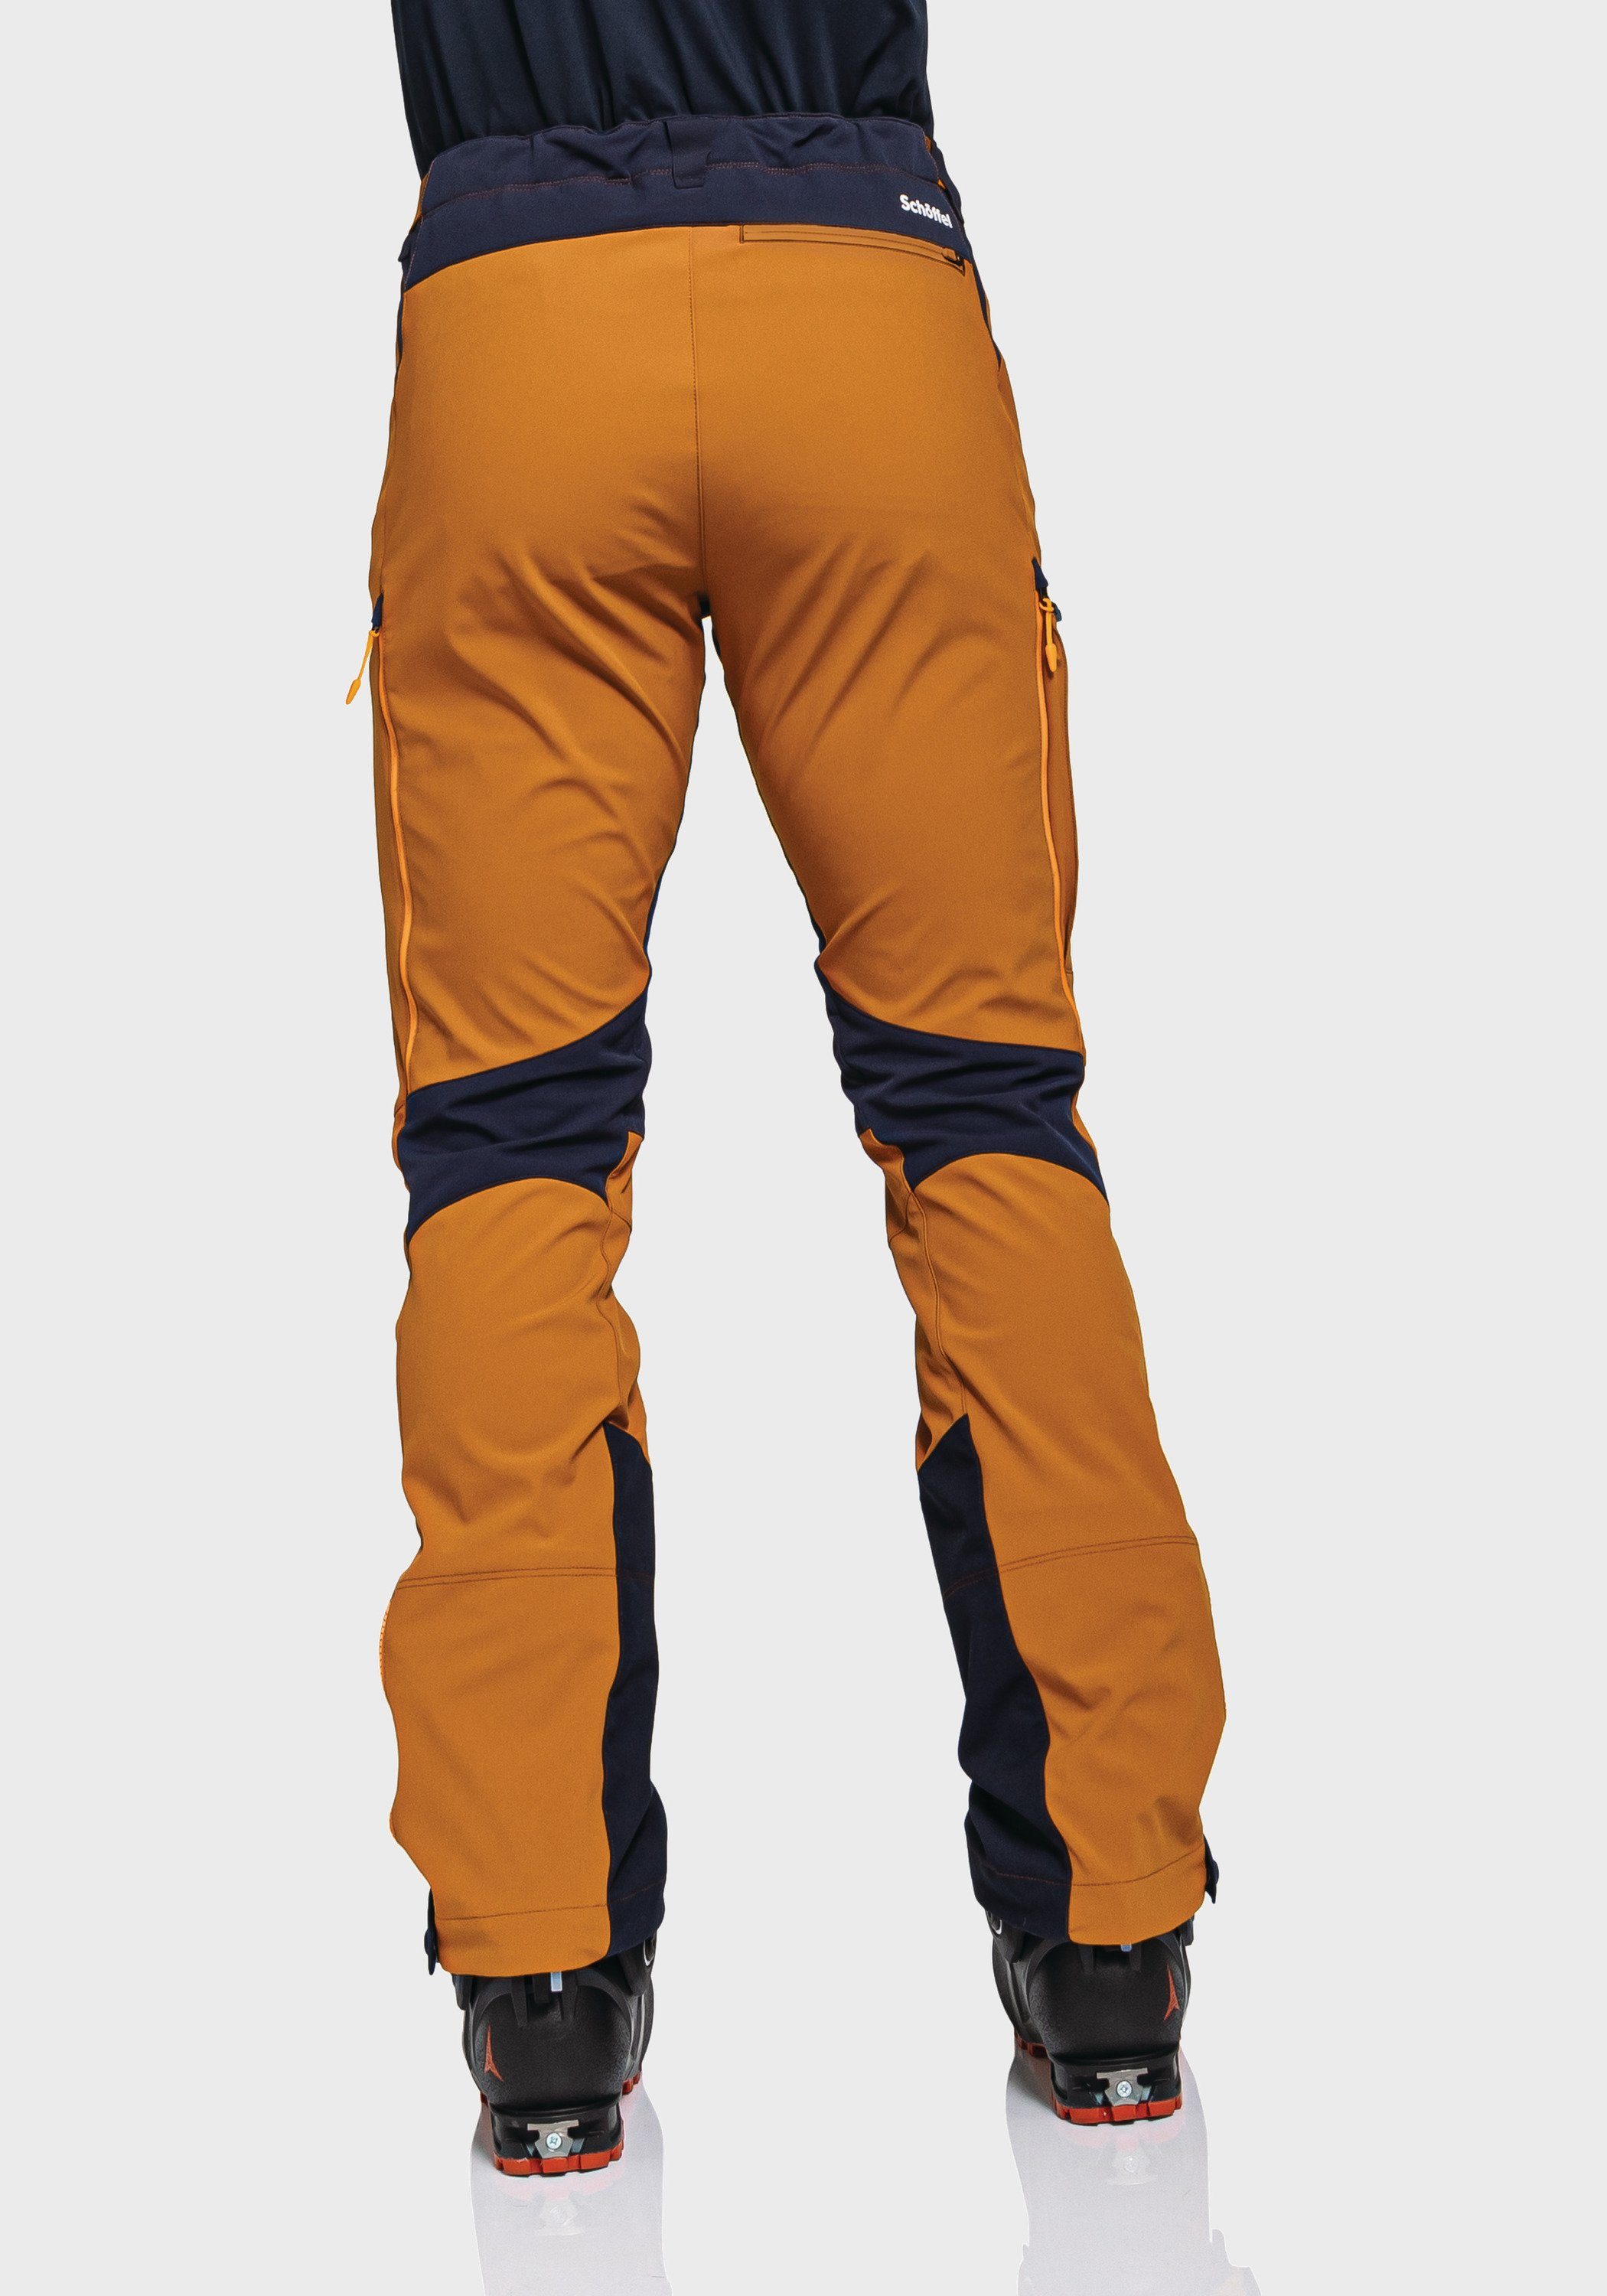 M Softshell orange Schöffel Outdoorhose Matrei Pants